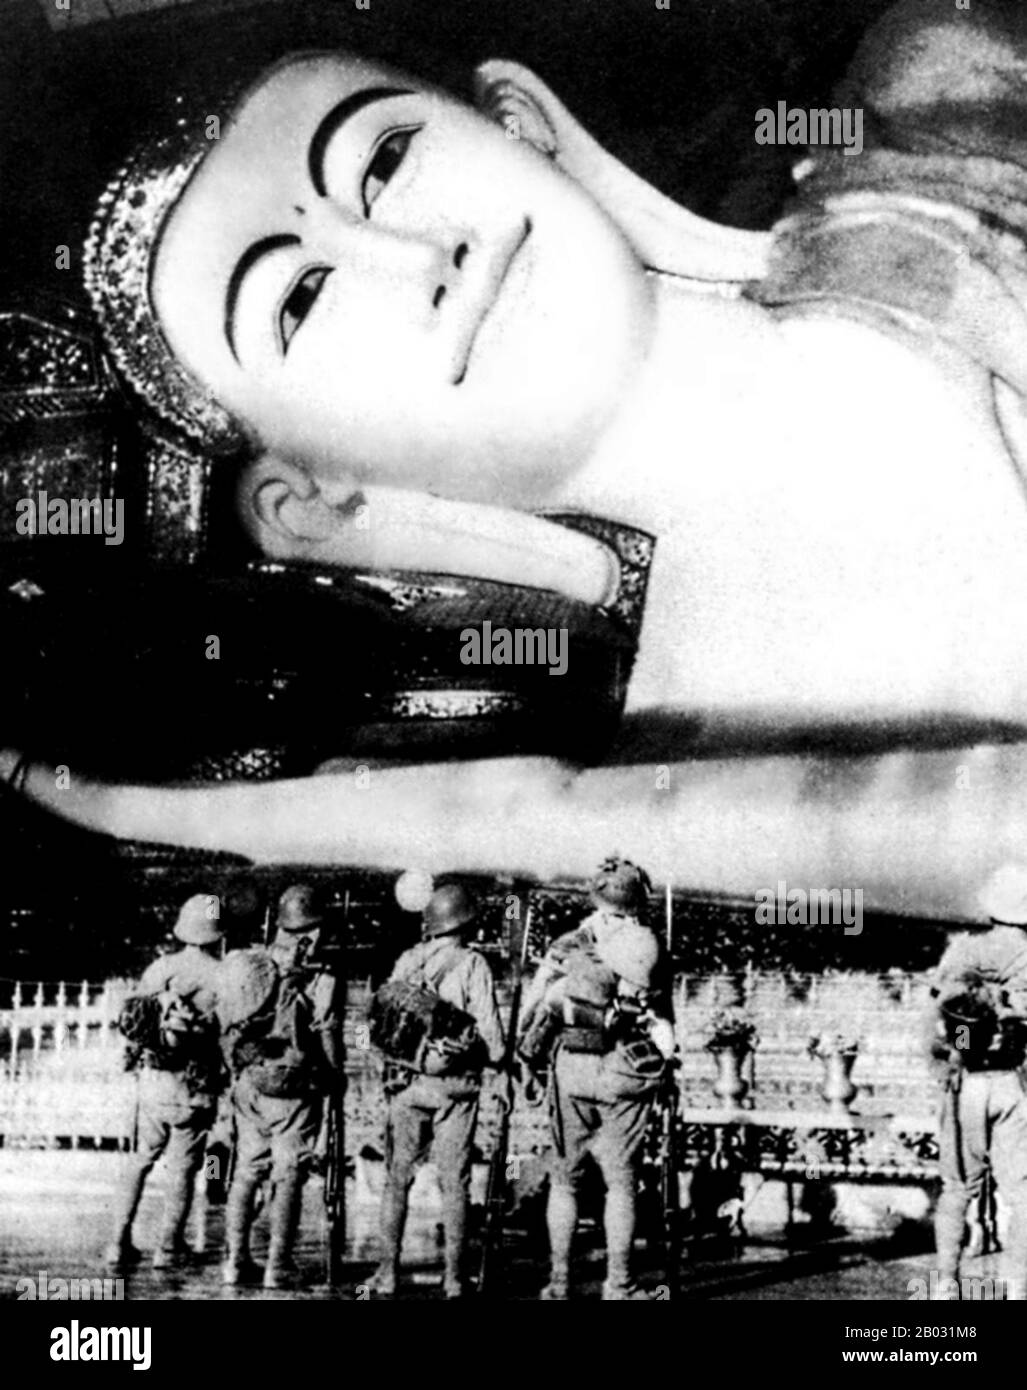 Birma, ein großes Schlachtfeld, wurde während des zweiten Weltkriegs verwüstet Bis März 1942, innerhalb von Monaten nach Kriegseintritt, waren japanische Truppen auf Rangun vorgerückt und die britische Verwaltung war zusammengebrochen. Eine birmanische Exekutivverwaltung unter der Leitung von Ba Maw wurde im August 1942 von den Japanerinnen gegründet. Wingates britische Chindits wurden zu weitreichenden Penetrationsgruppen gebildet, die für den Betrieb tief hinter japanischen Linien ausgebildet wurden. Eine ähnliche amerikanische Einheit, Merrills Marauders, folgte 1943 den Chindits in den birmanischen Dschungel. Ab Ende 1944 starteten alliierte Truppen eine Reihe von Offensiven Stockfoto